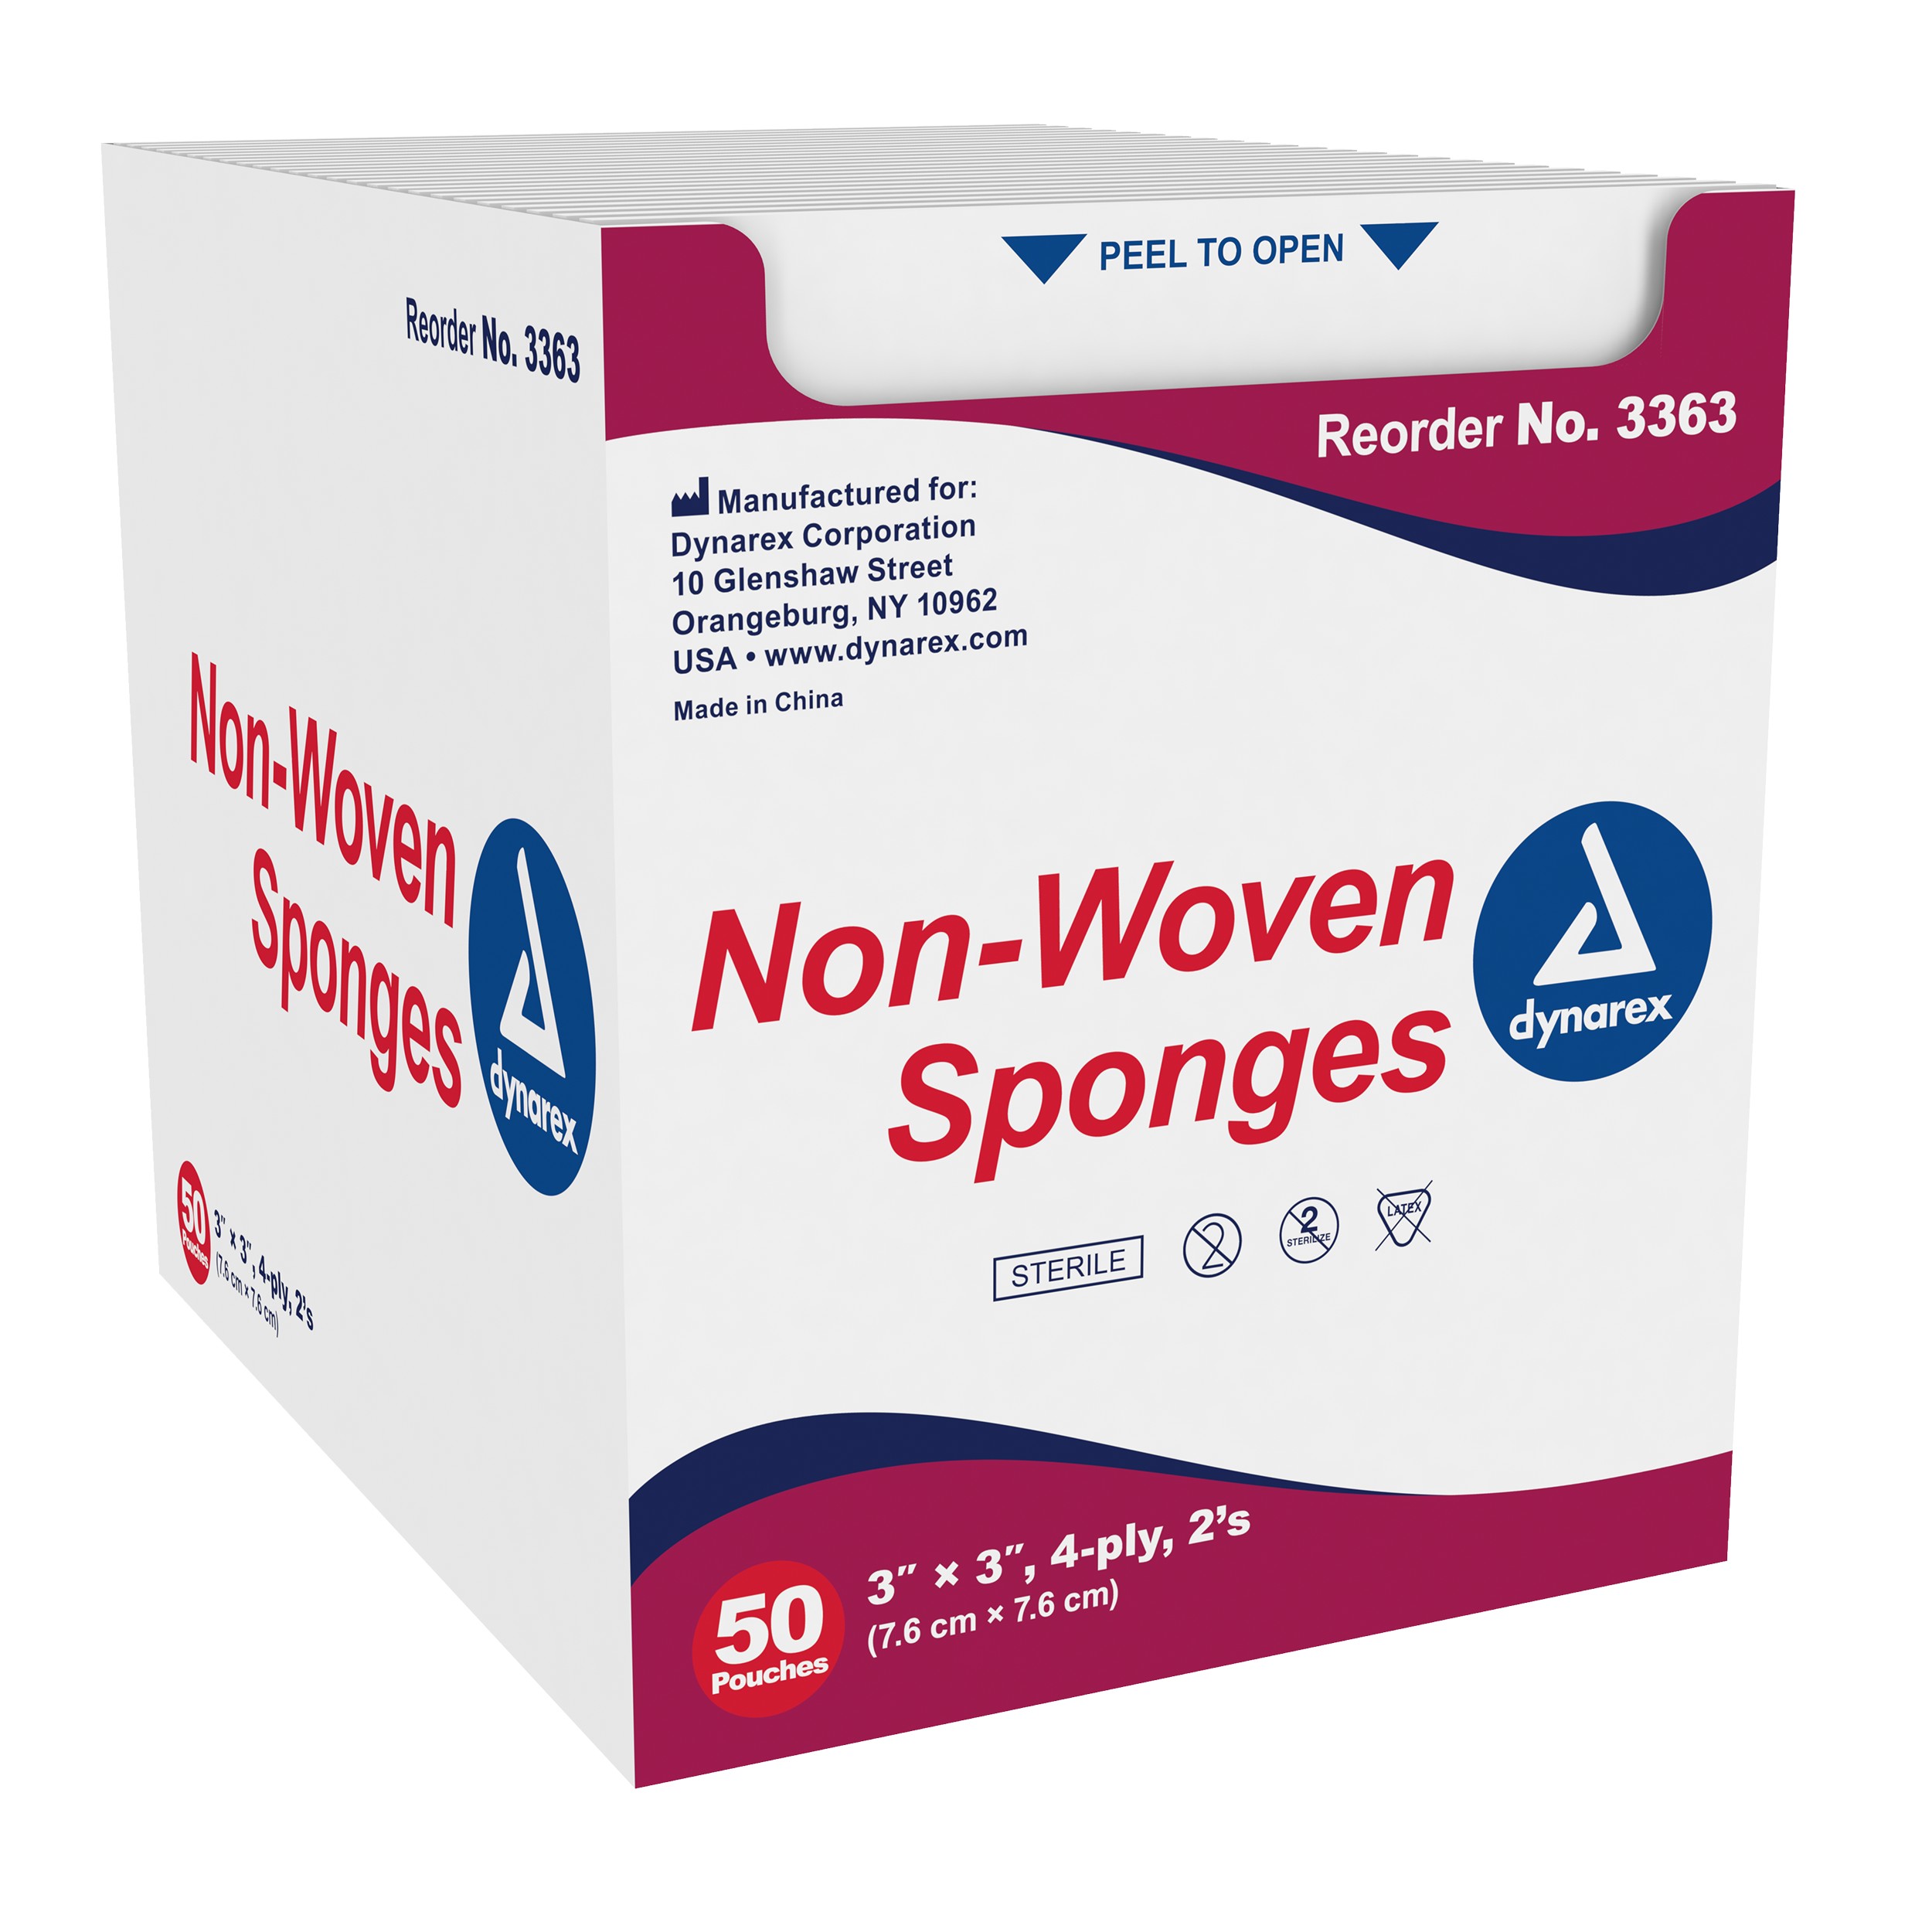 Non-Woven Sponge Sterile 2's, 3